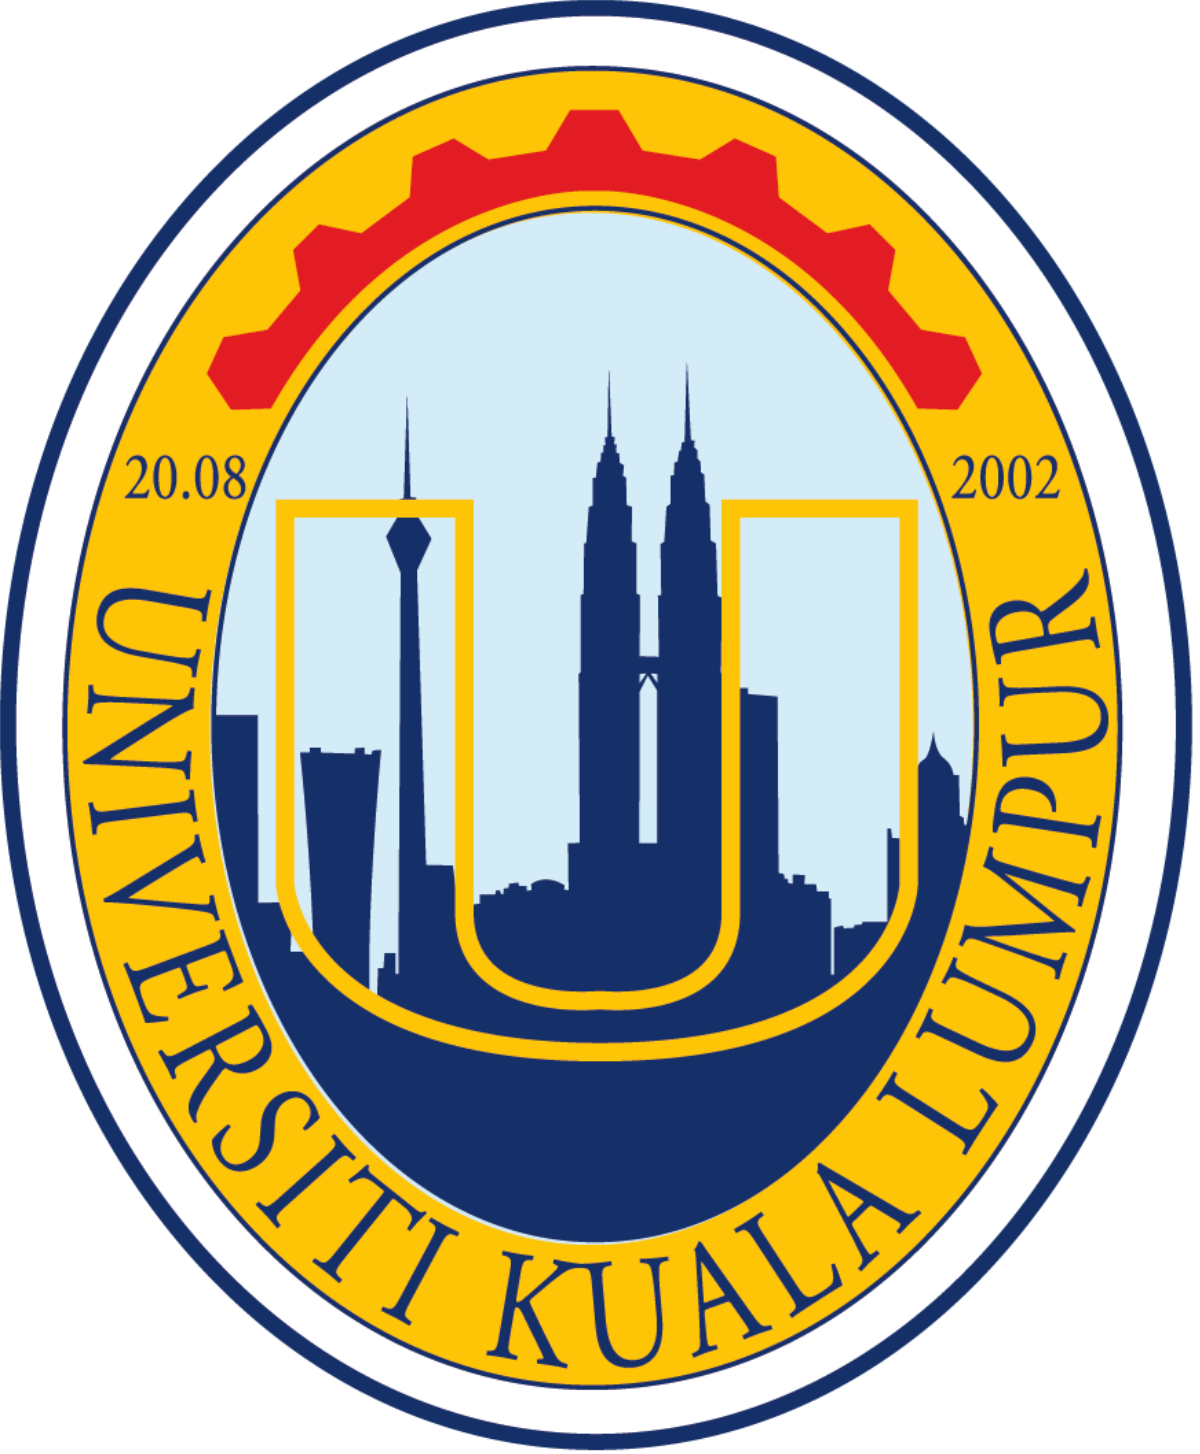 University of Kuala Lumpur Malaysia